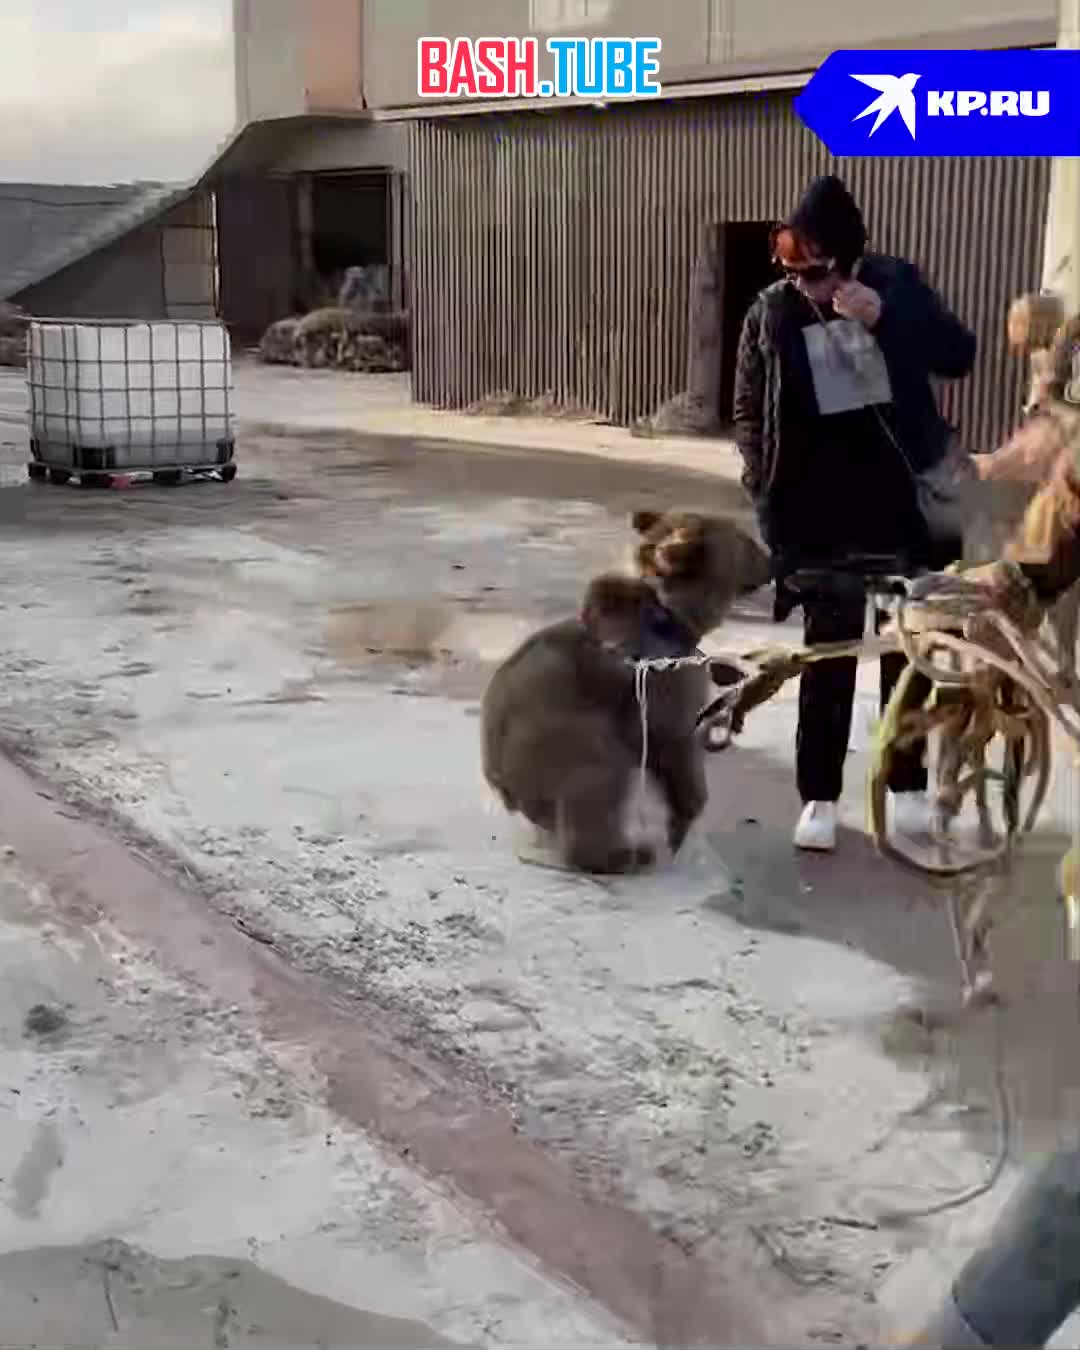 ⁣ Хотели продать в ресторан: медвежонка чудом спасли от браконьеров в Дагестане